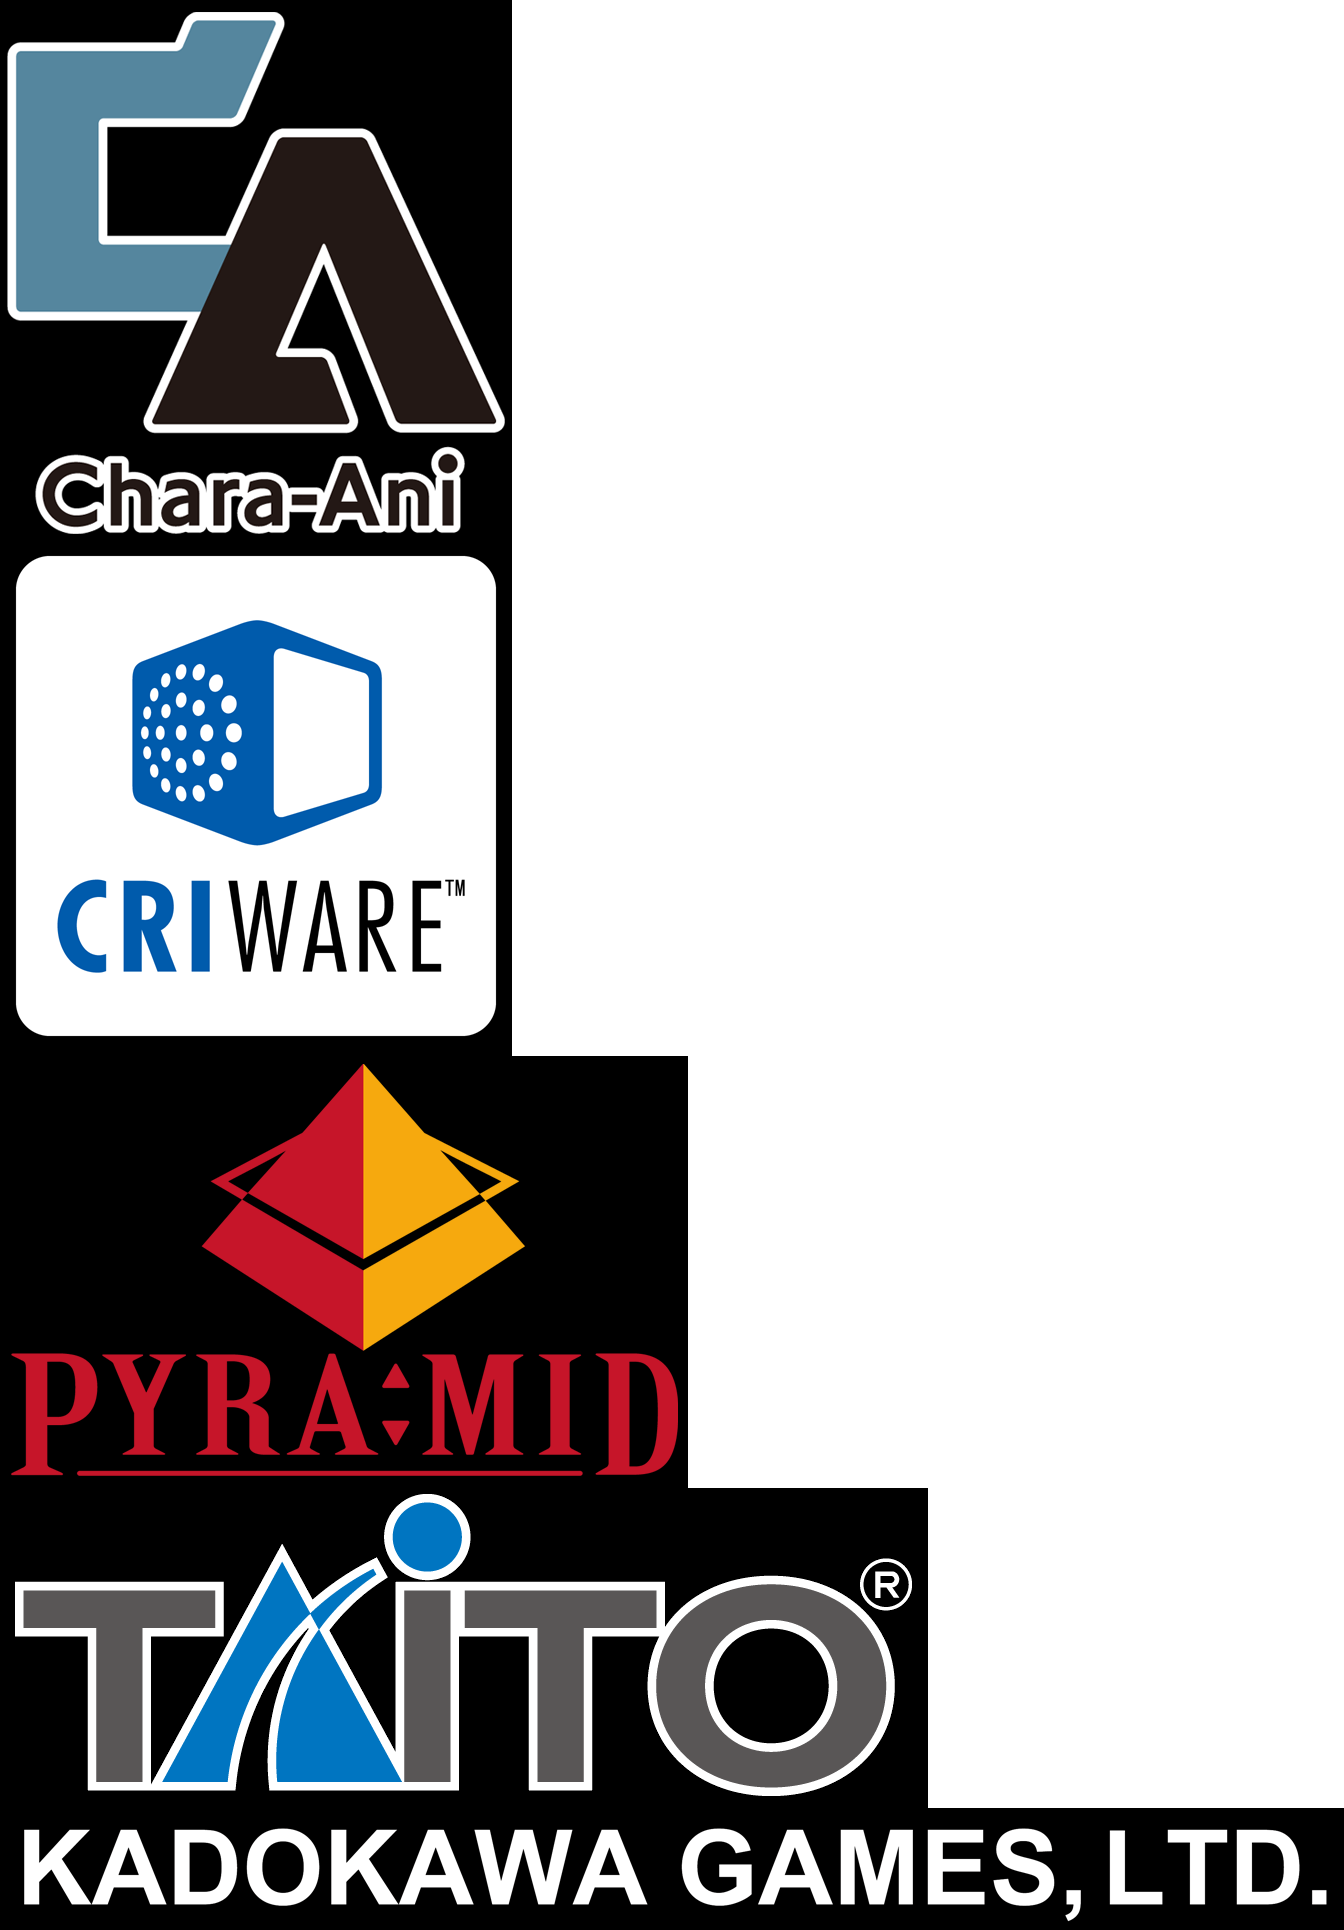 Company Logos